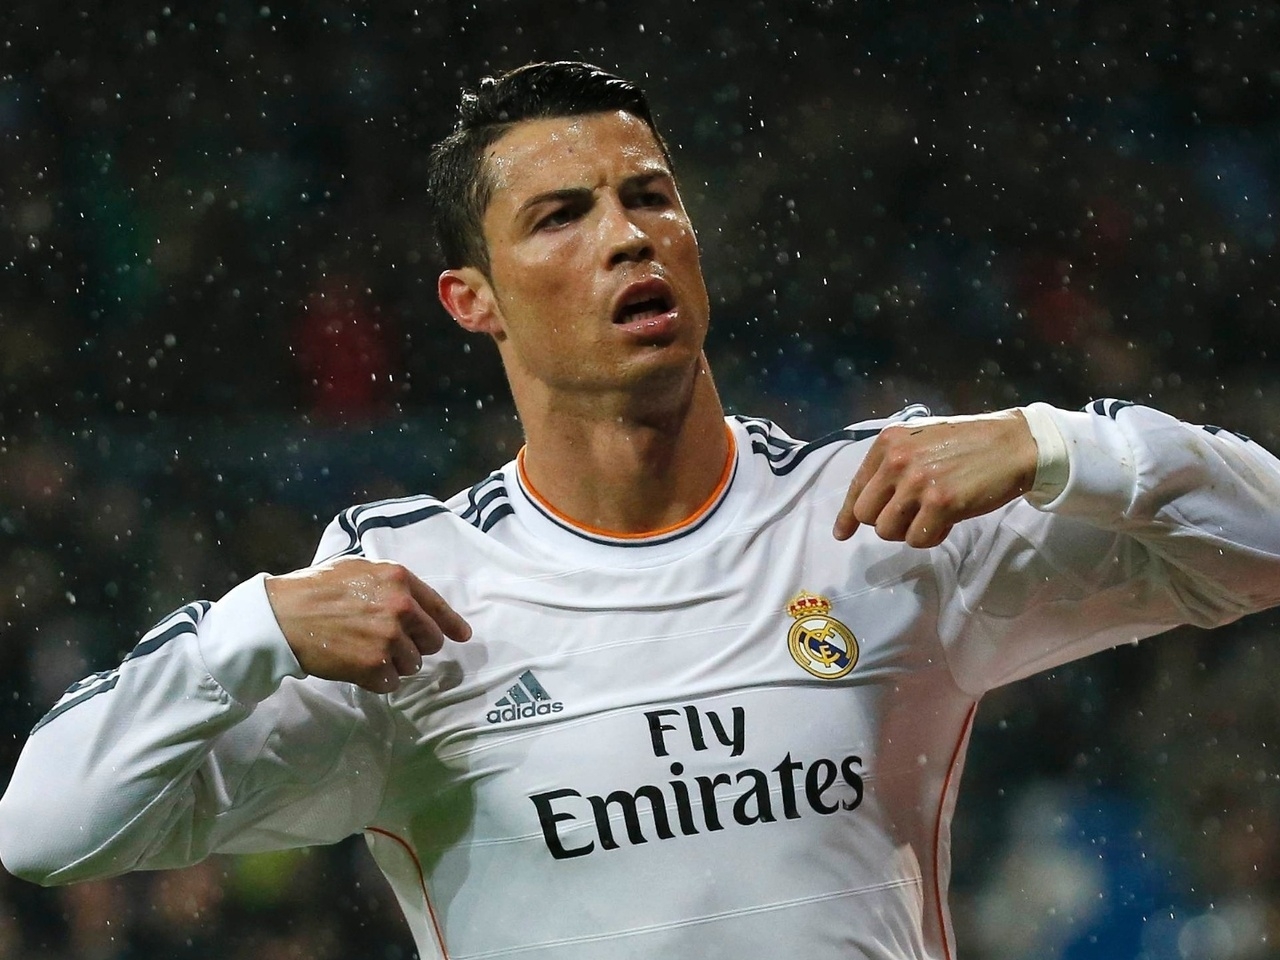 Cristiano Ronaldo in Rain for 1280 x 960 resolution